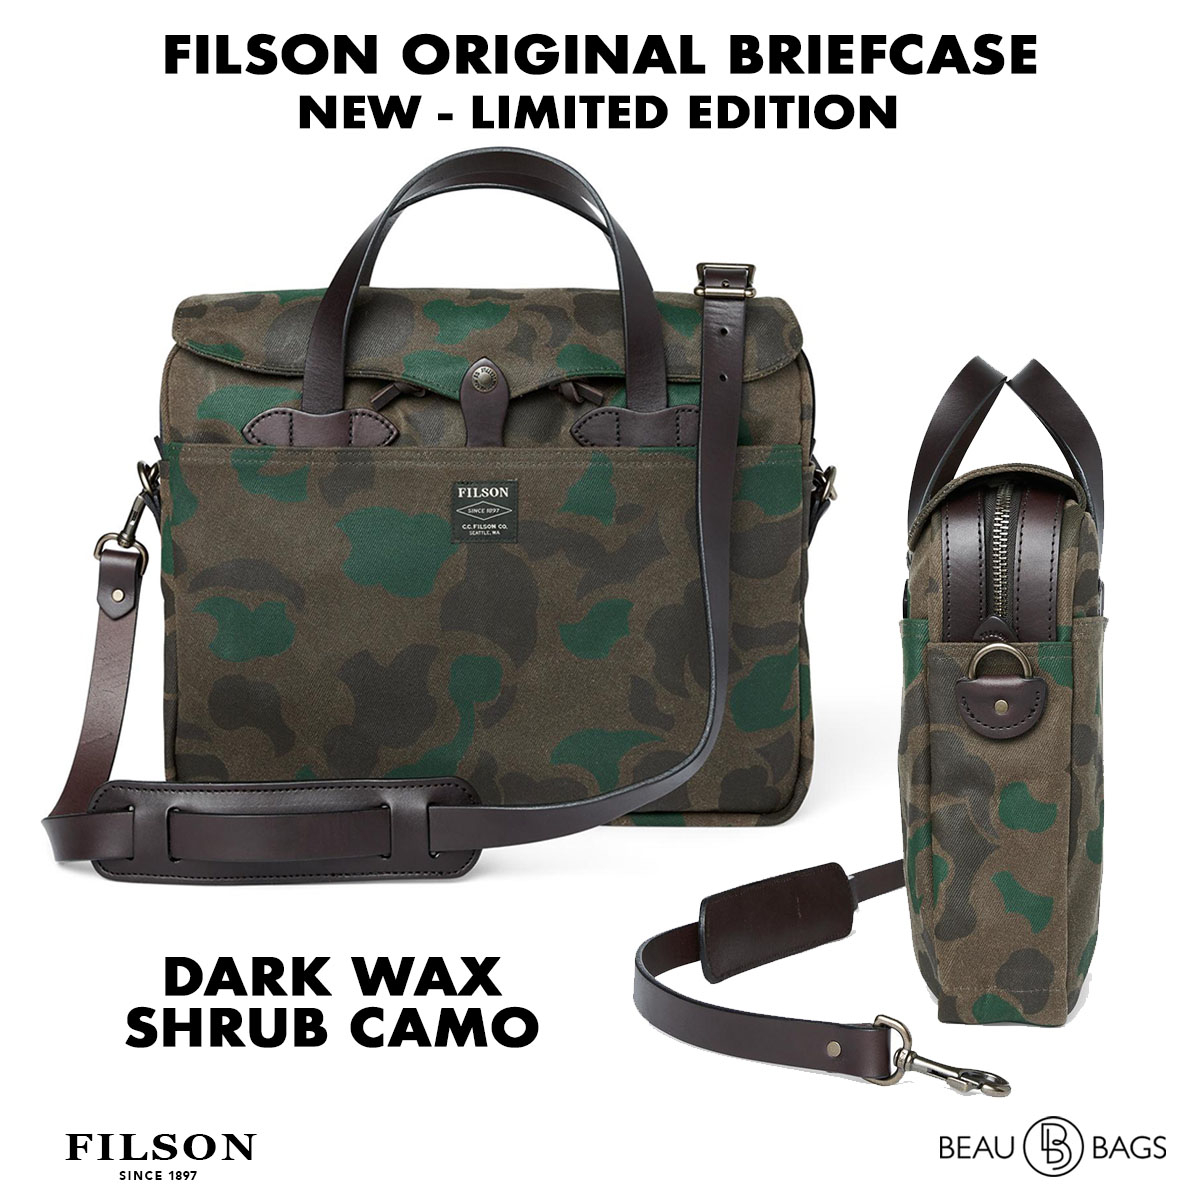 Filson Waxed Rugged Twill Original Briefcase 20226928-Dark Wax Shrub Camo, Limited Camo Edition